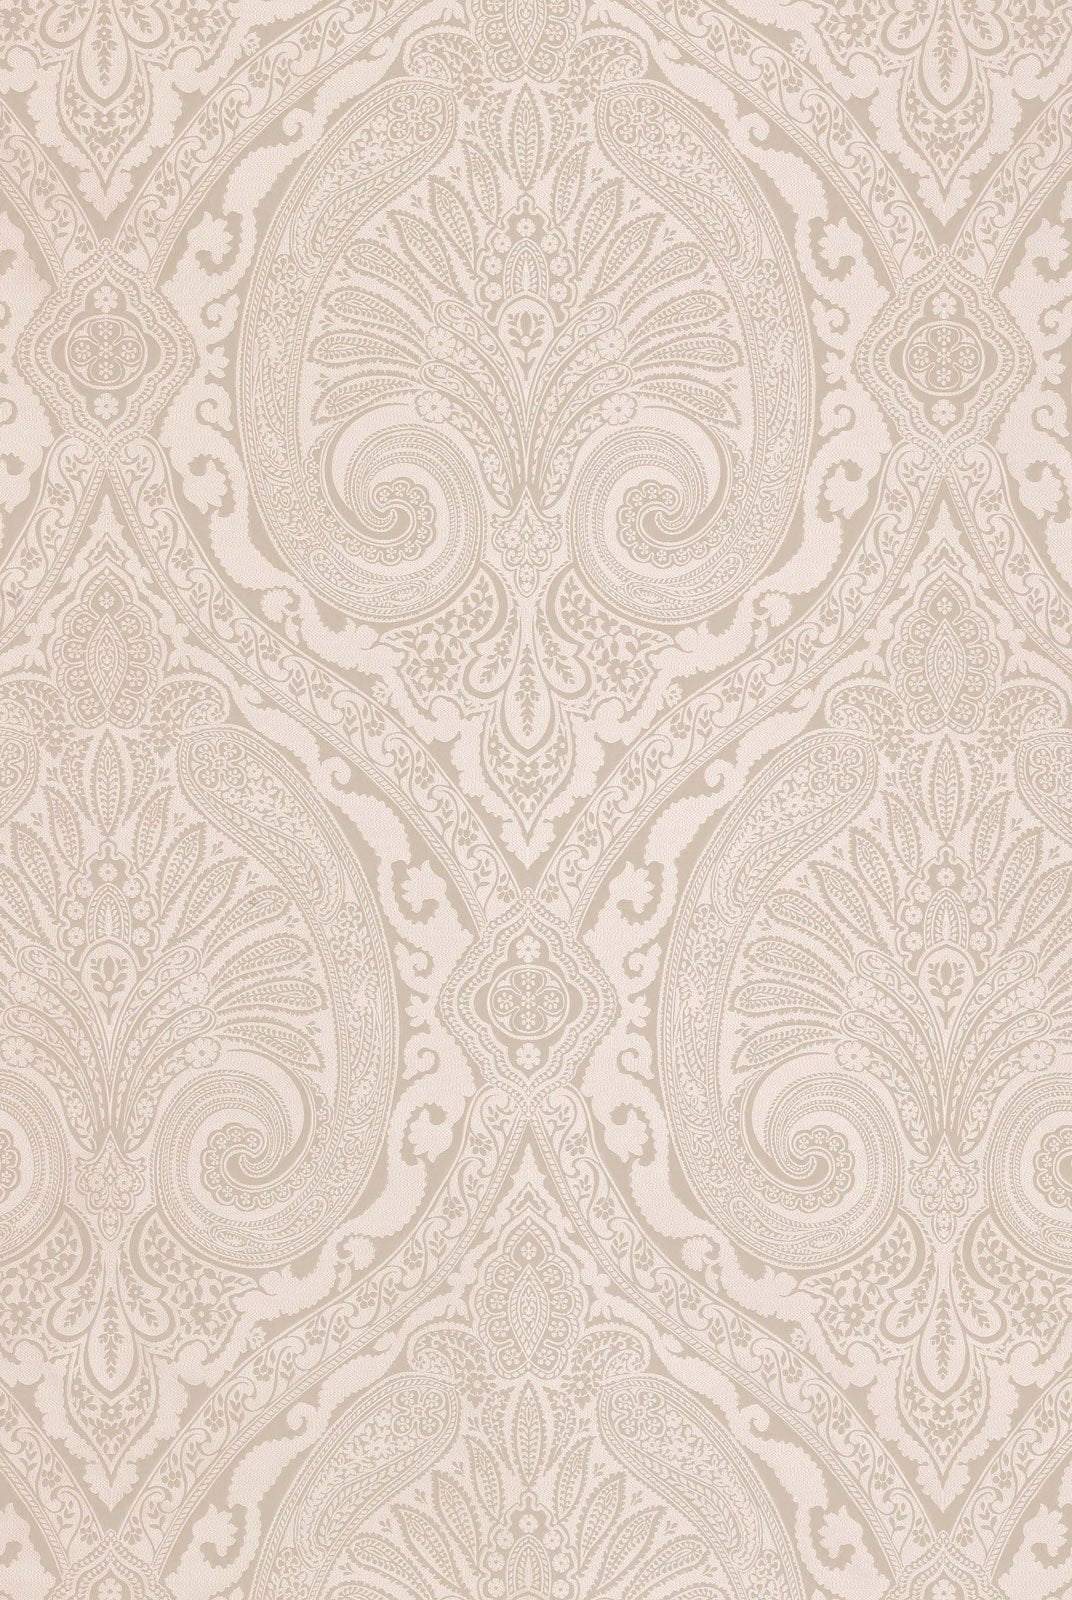 Nina Campbell Fabric - Cathay Khitan Freh Grey NCF4176-01